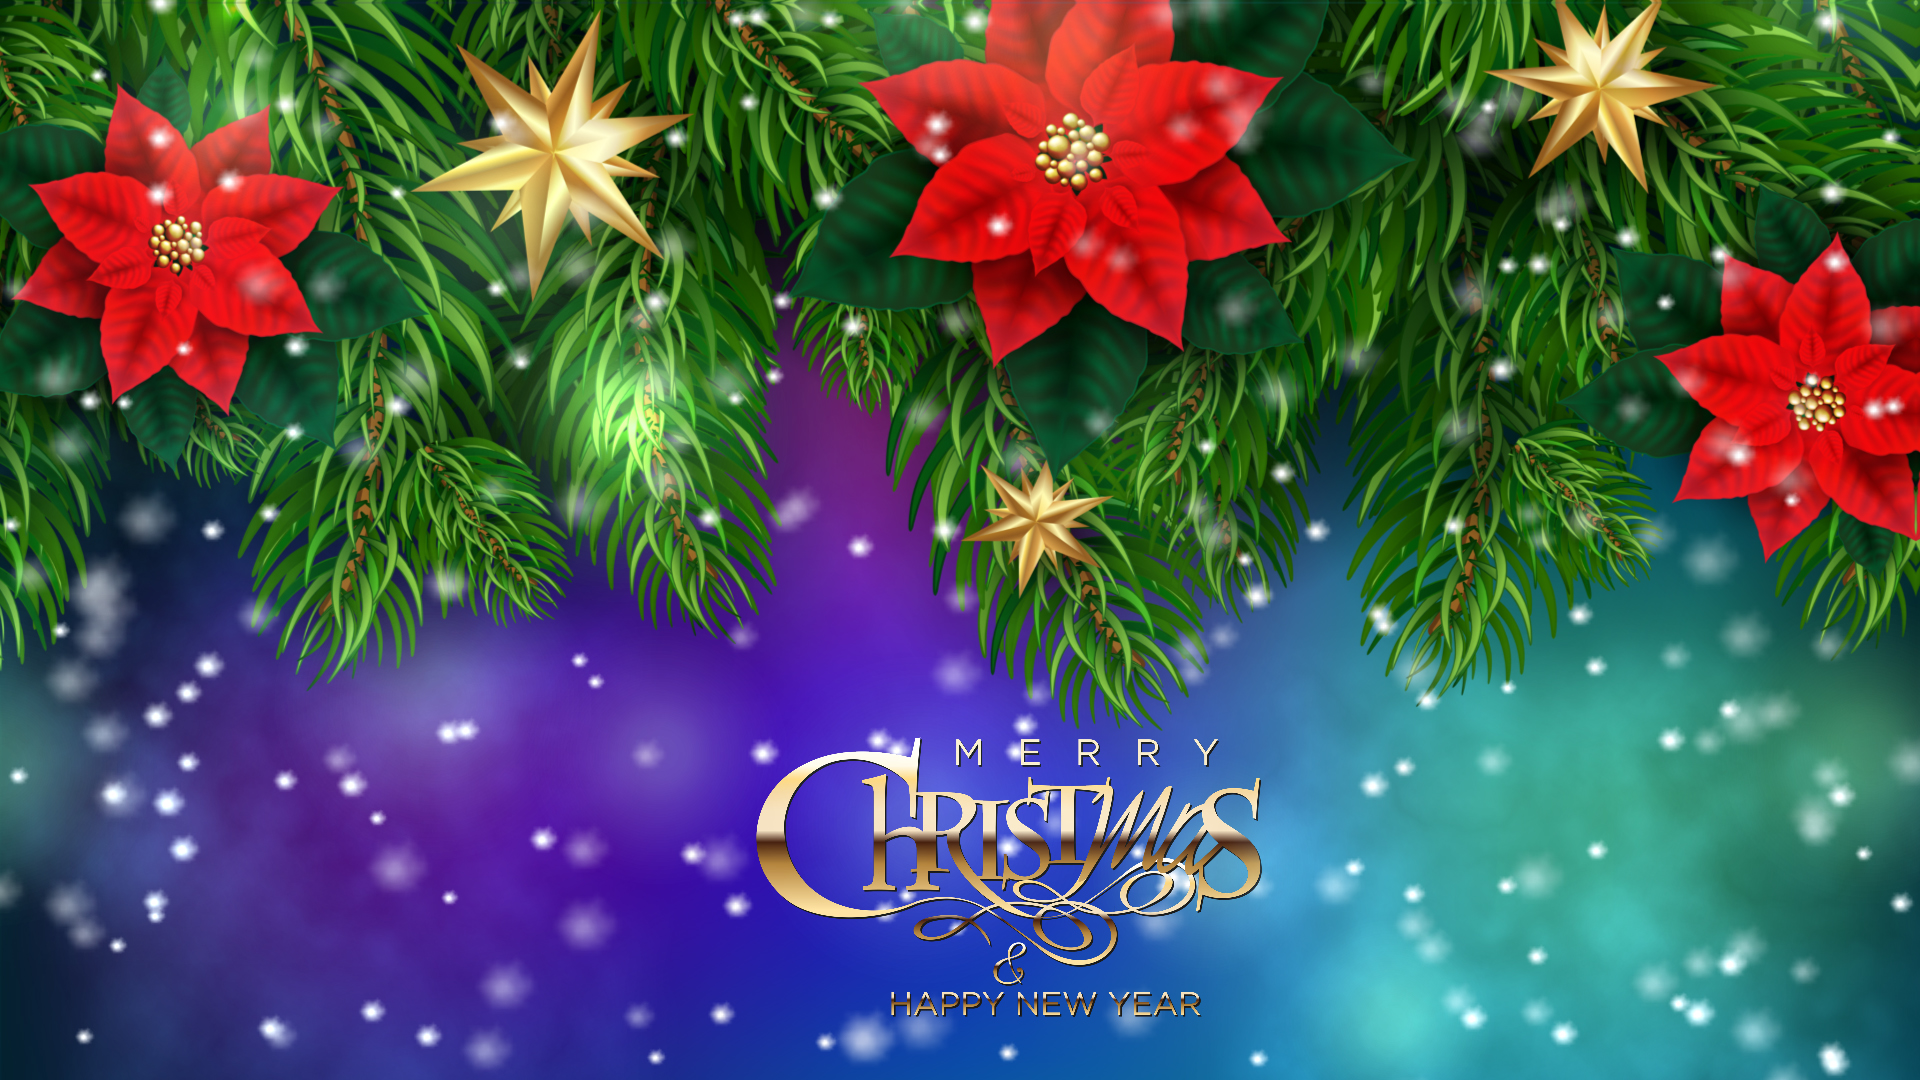 Christmas Holiday Screensaver for Windows 10 - Christmas Dream